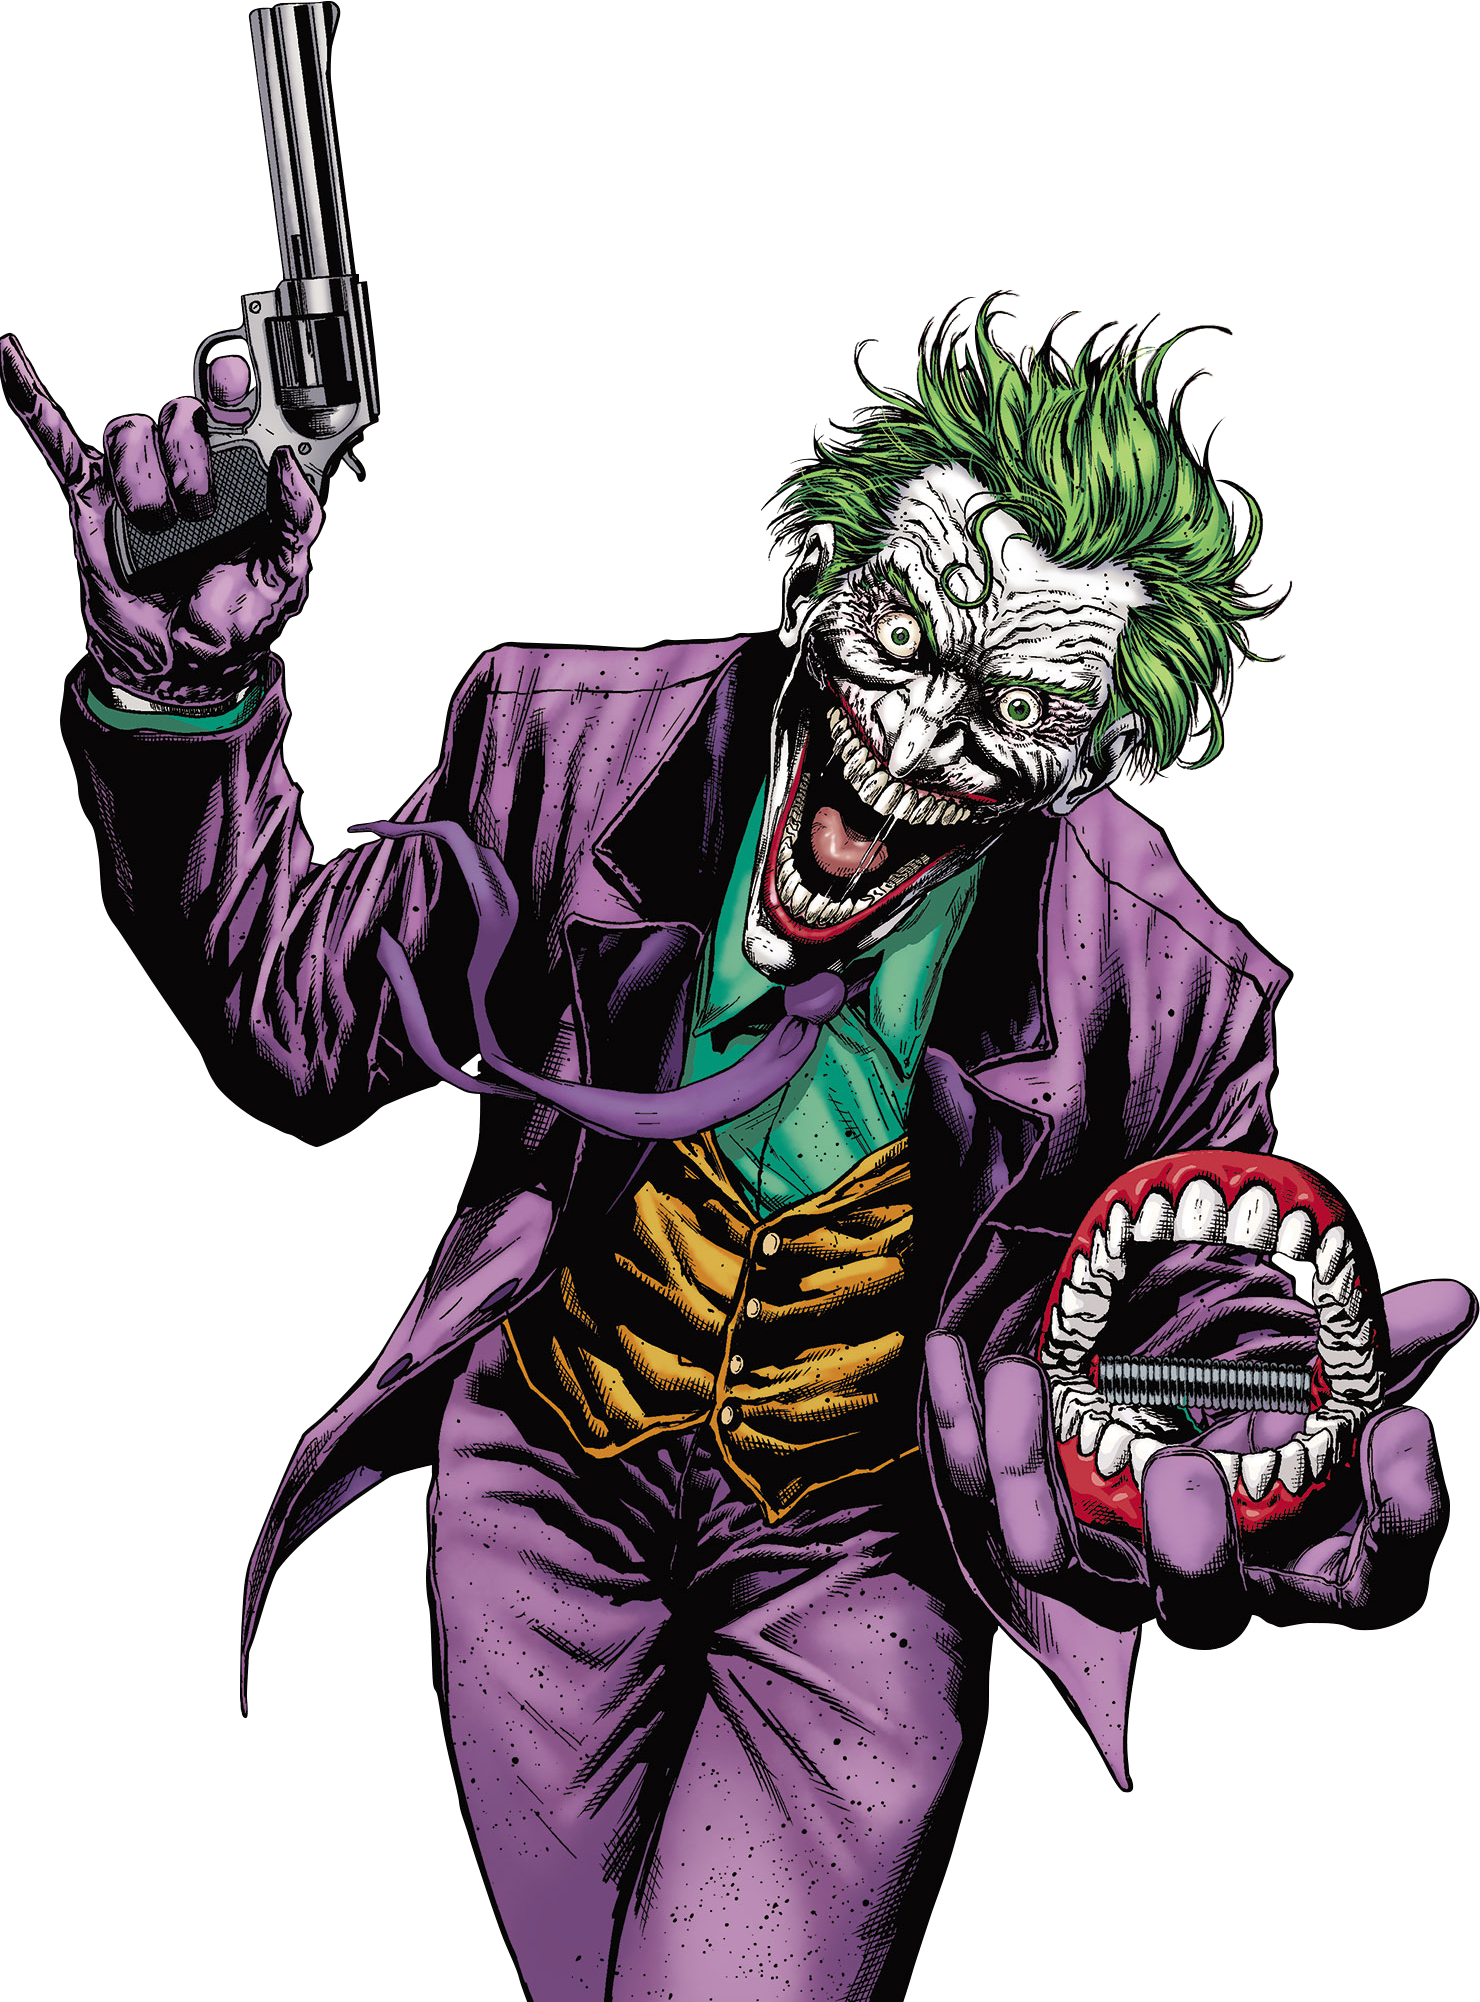 Joker Cosplay Free Download Image PNG Image